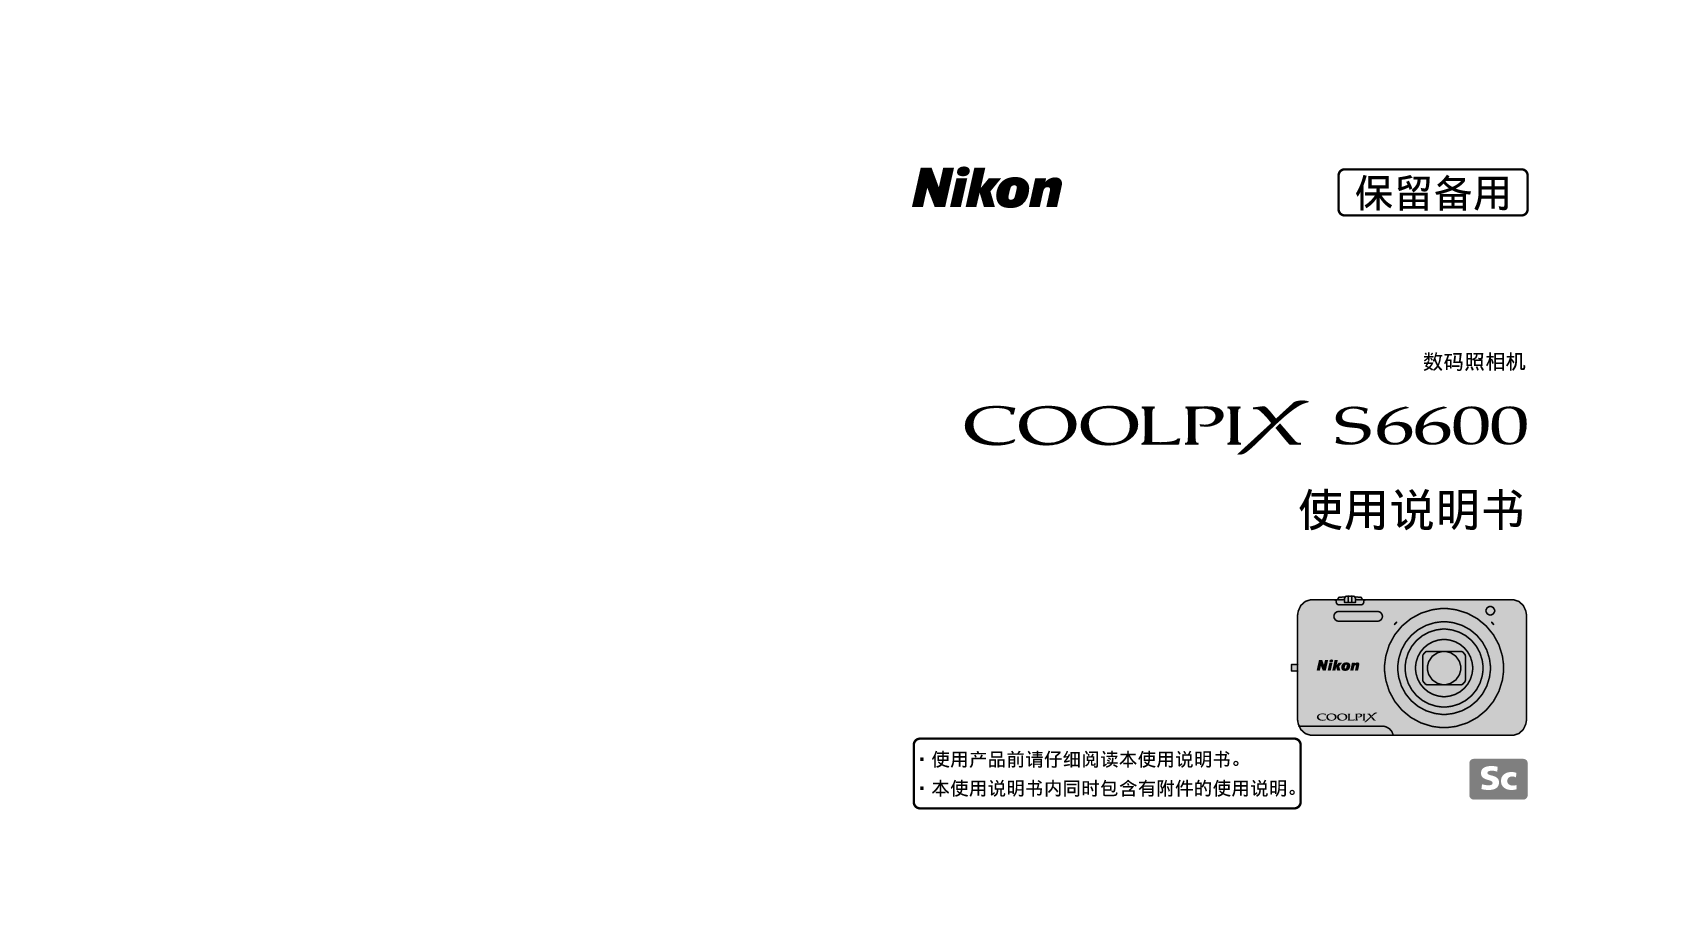 尼康 Nikon COOLPIX S6600 国际版 使用说明书 封面